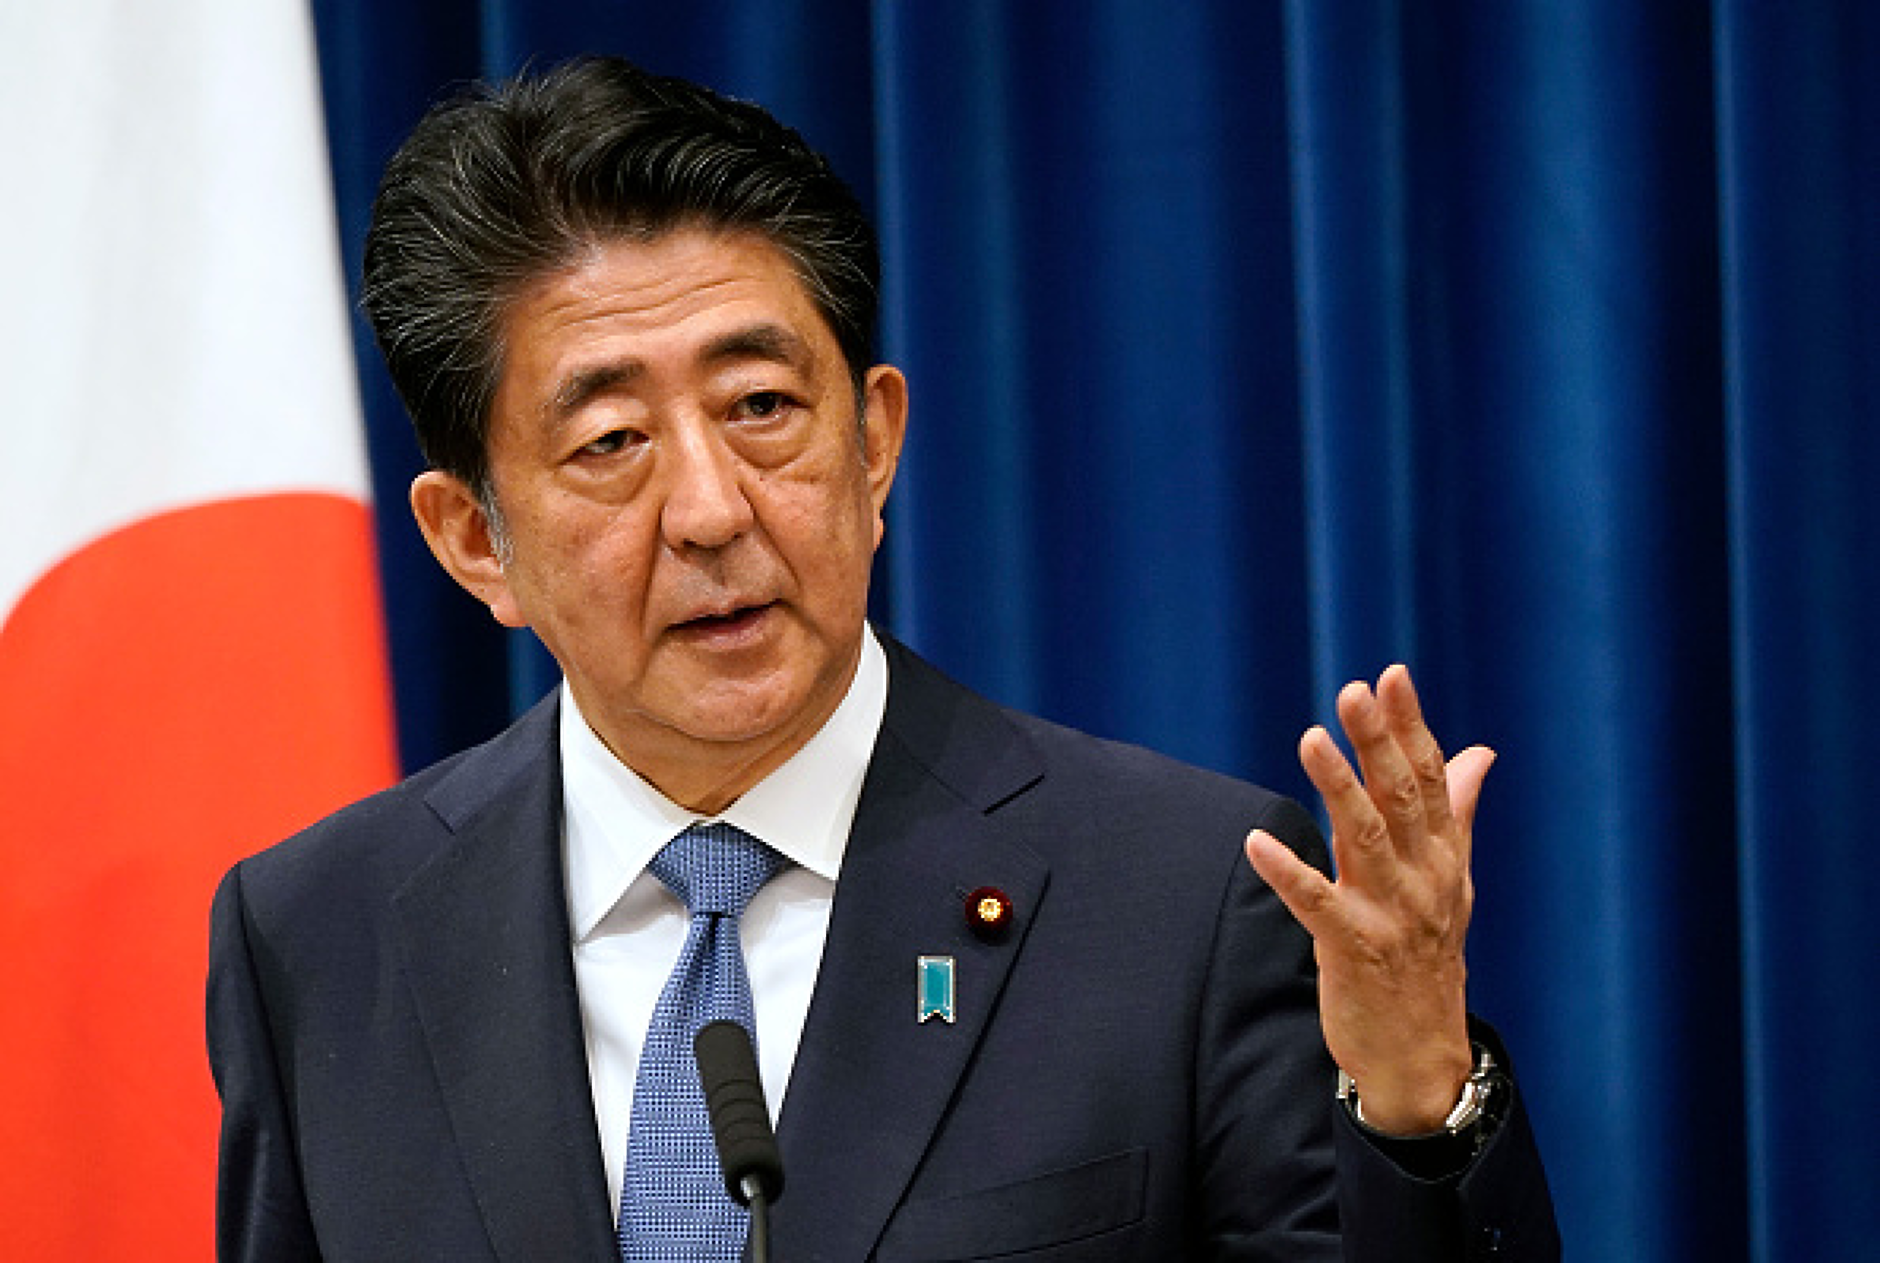 Министерски скандал в Япония с Църквата на обединението и убийството на бившия премиер Шиндзо Абе